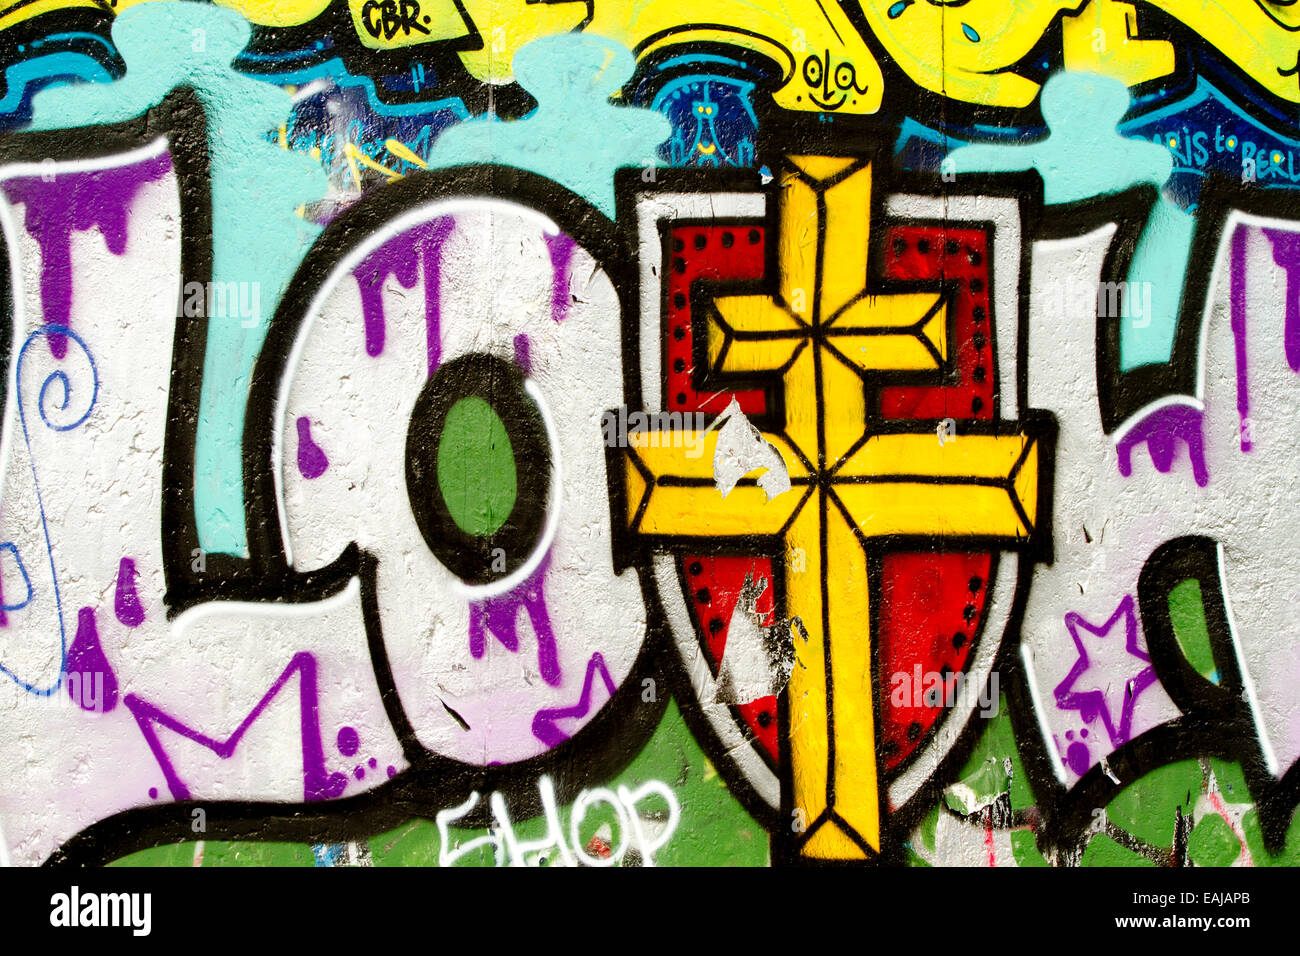 Graffiti tag art urban Berlin Wall loth cross Stock Photo